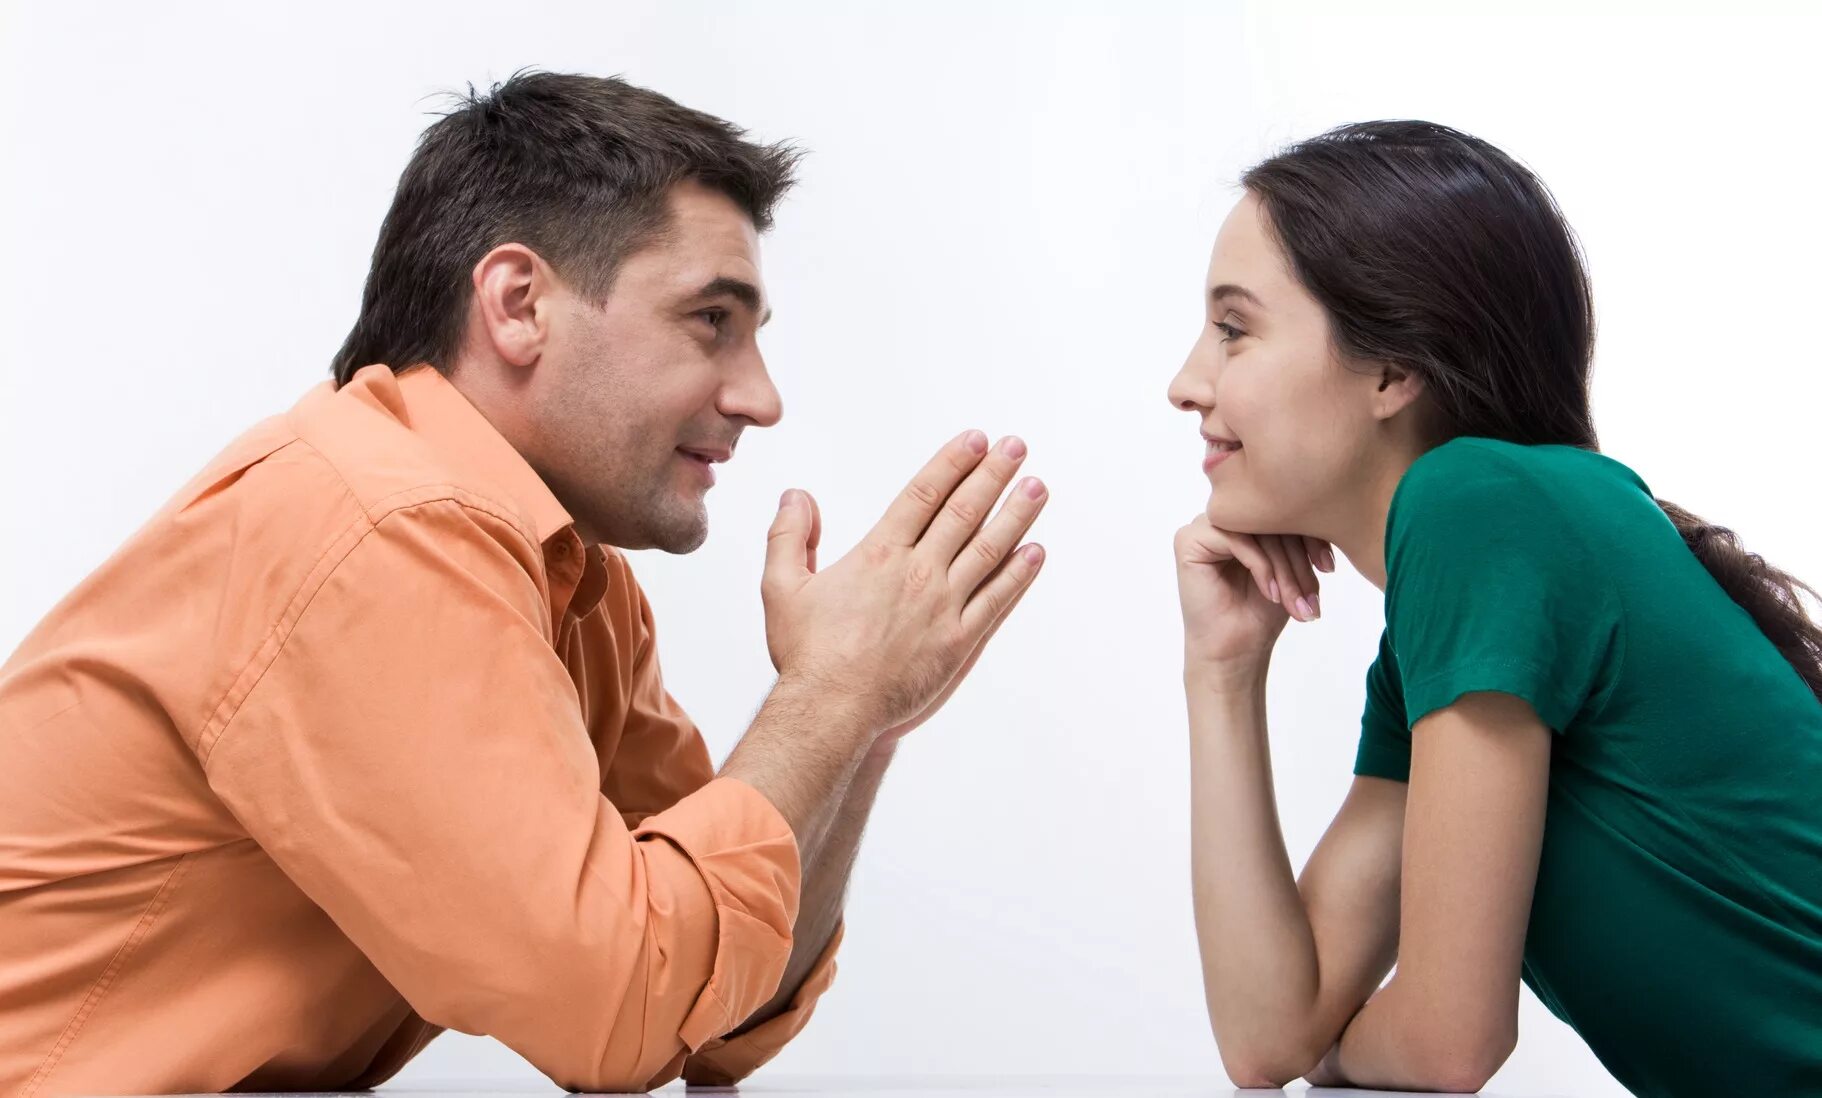 Женщина получает удовольствие от мужчины. Разговор между мужчиной и женщиной. Общение людей. Взаимопонимание в общении. Беседа мужчины и женщины.